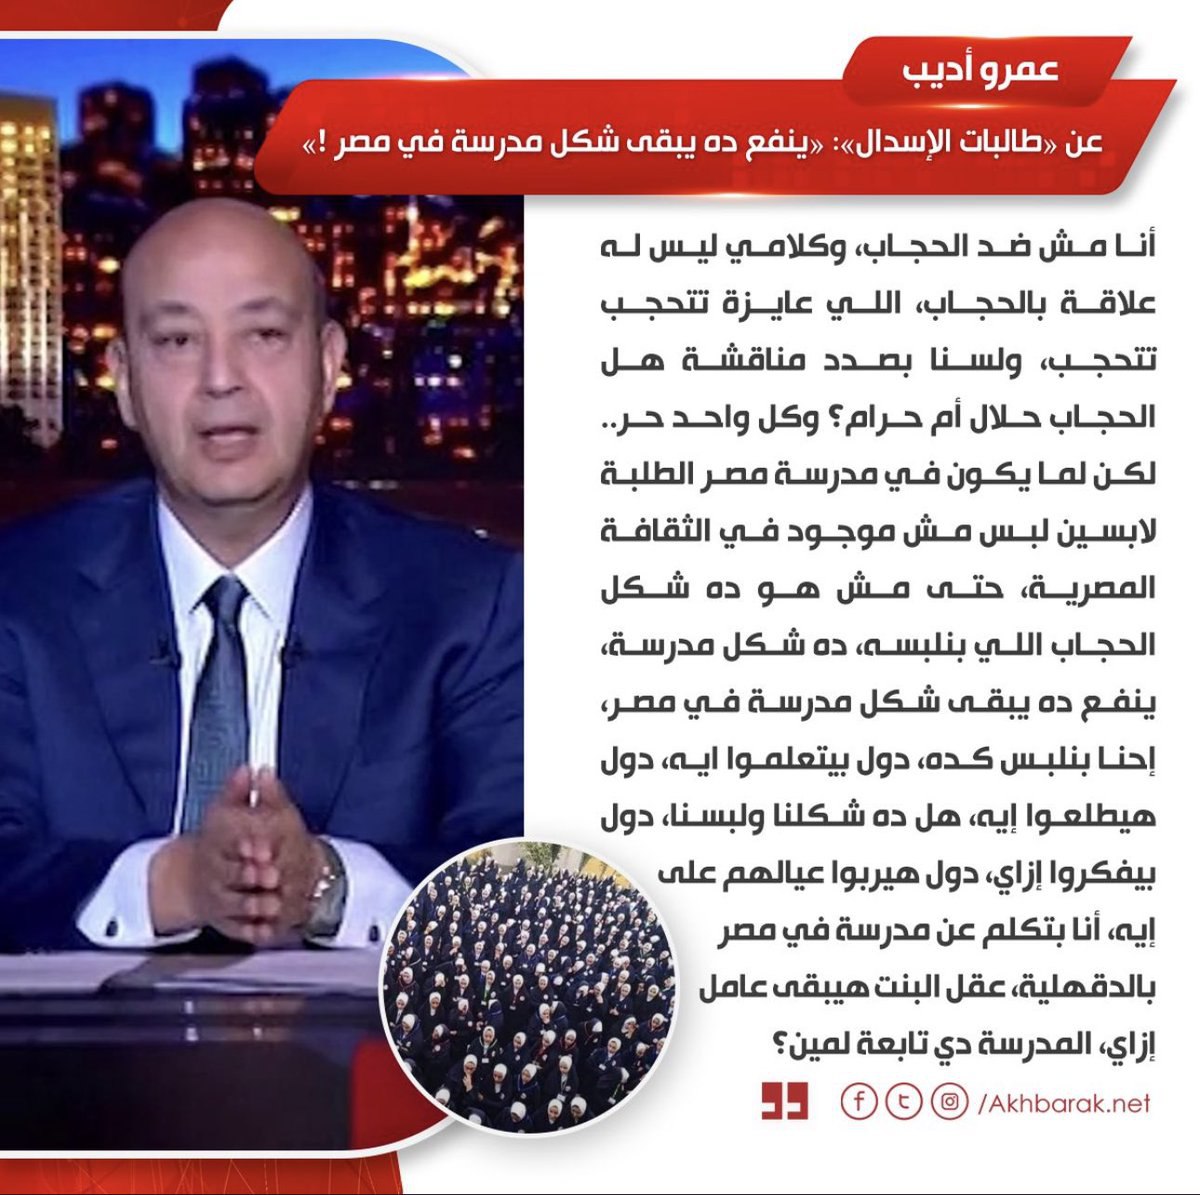 عمرو أديب يحرض على الطالبات المحجبات من على قناة سعودية!